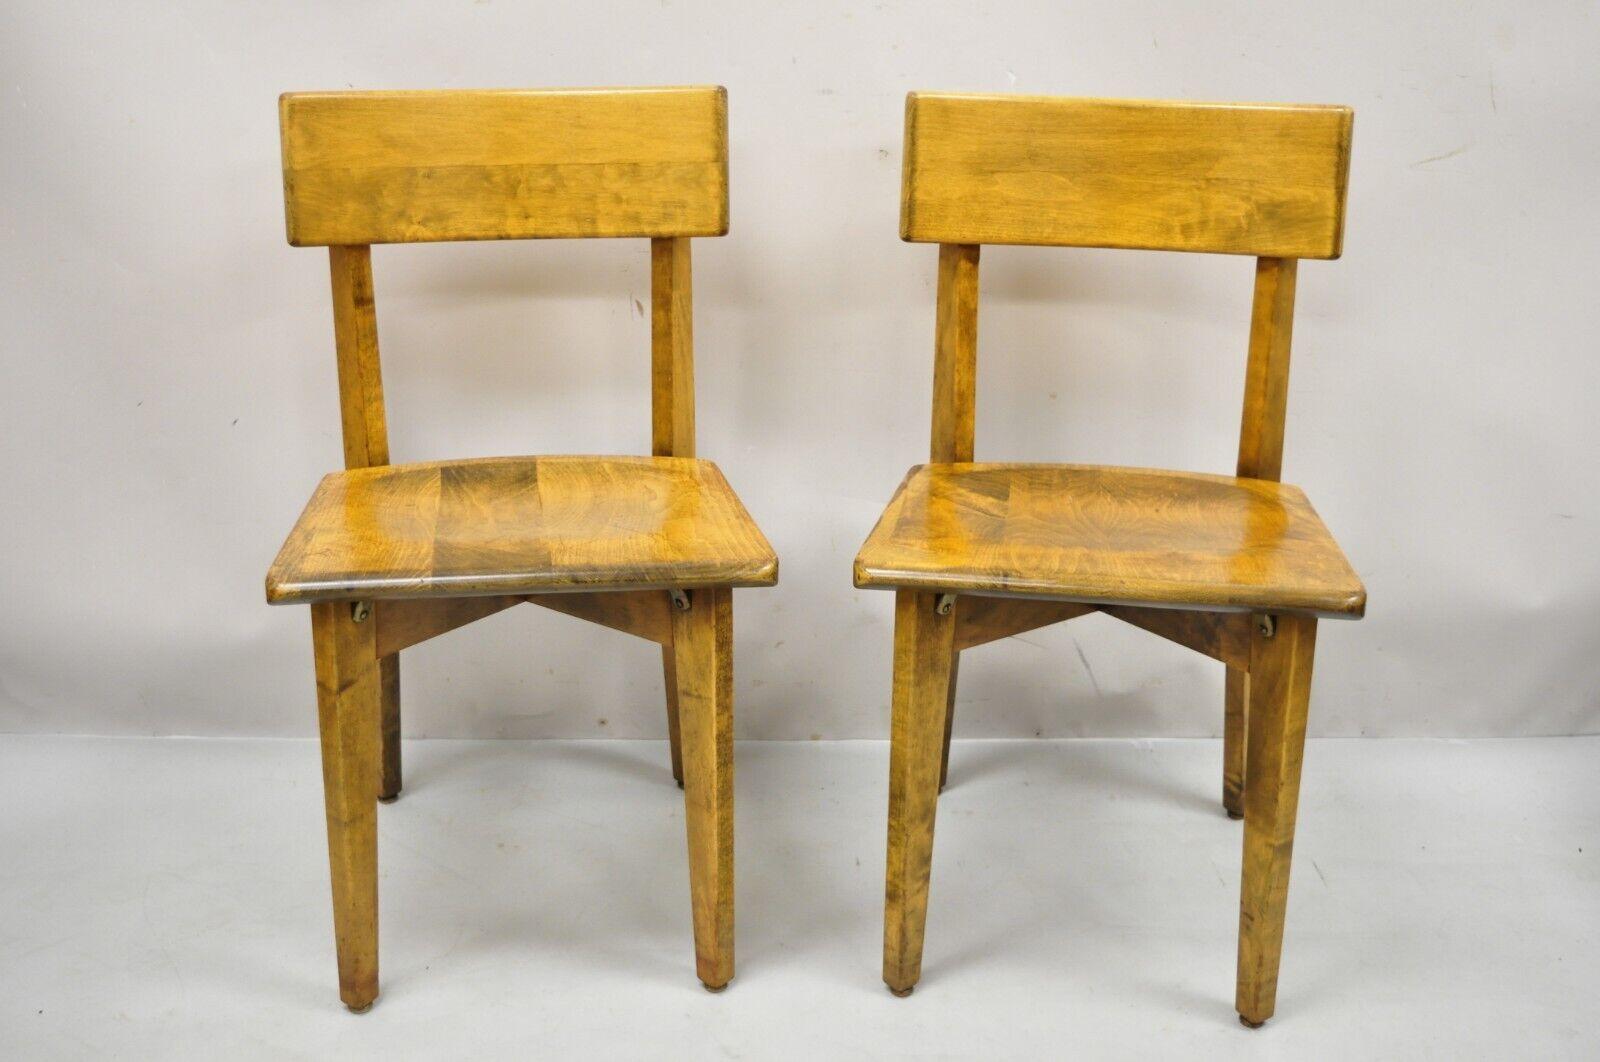 Paire de chaises latérales en bois Gunlocke Vintage Mid-Century Modern. L'article comprend (2) chaises latérales, cadres en bois massif, beau grain de bois, étiquette d'origine, très bel ensemble vintage, artisanat américain de qualité. Vers le